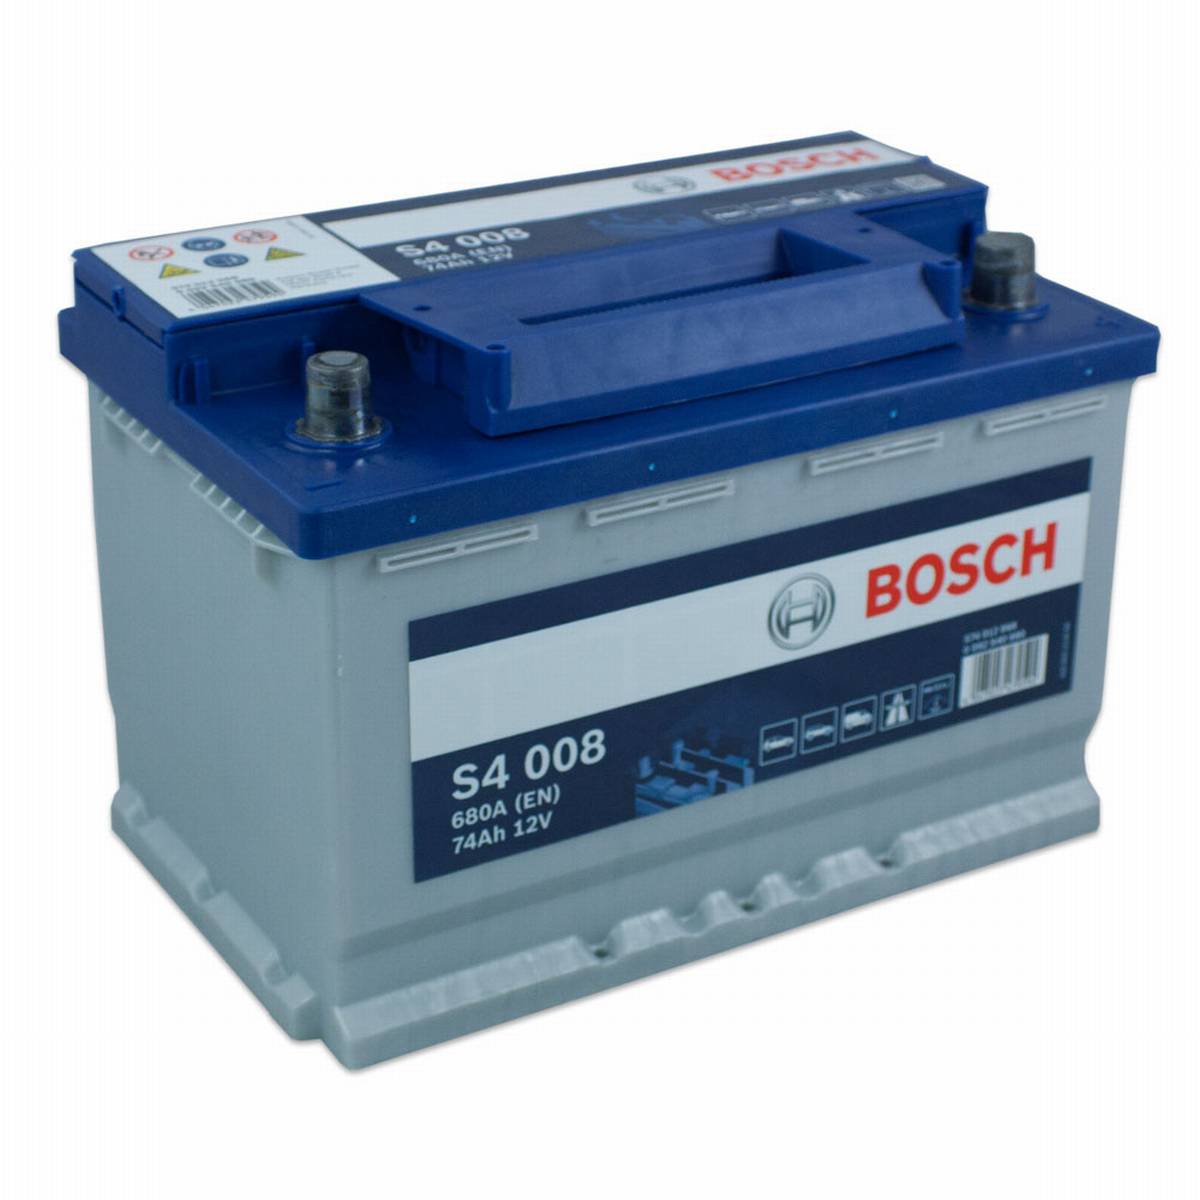 Bosch s4 купить. Bosch s4 008. Bosch s4 008 74ah. Bosch s4 00252 Ah. Аккумулятор Bosch 12v 60ah.